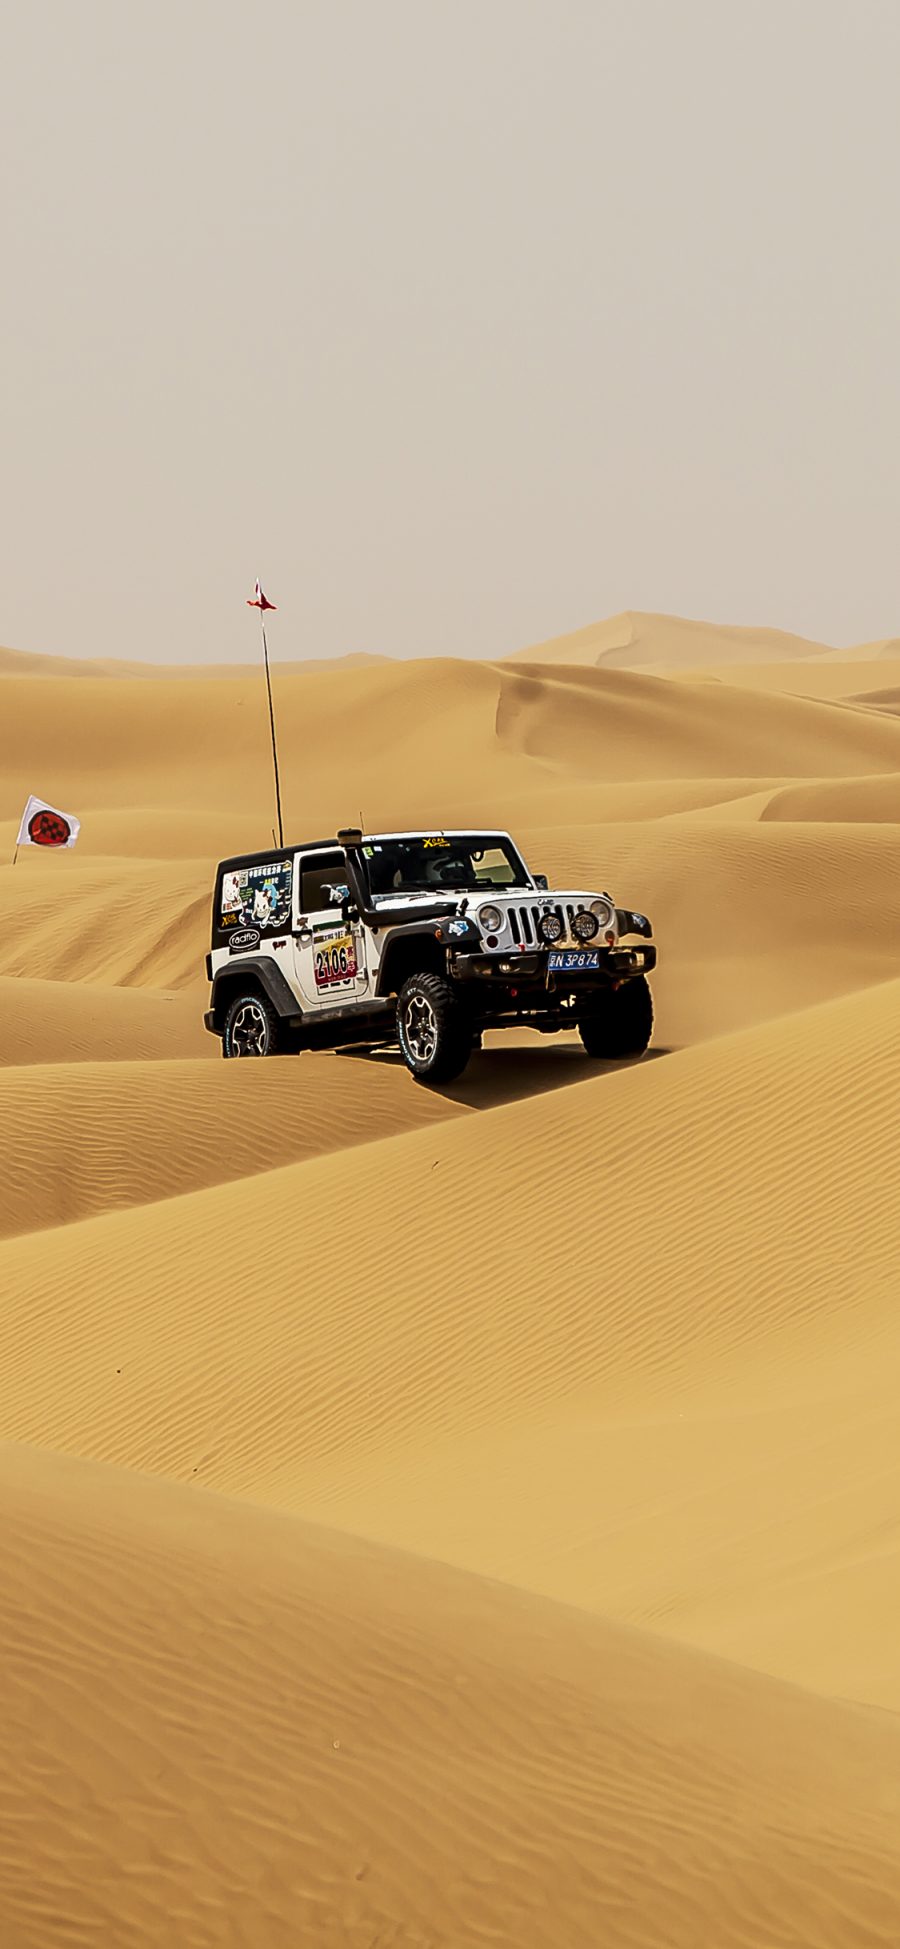 [2436×1125]沙漠 越野车 竞技 荒漠 苹果手机壁纸图片